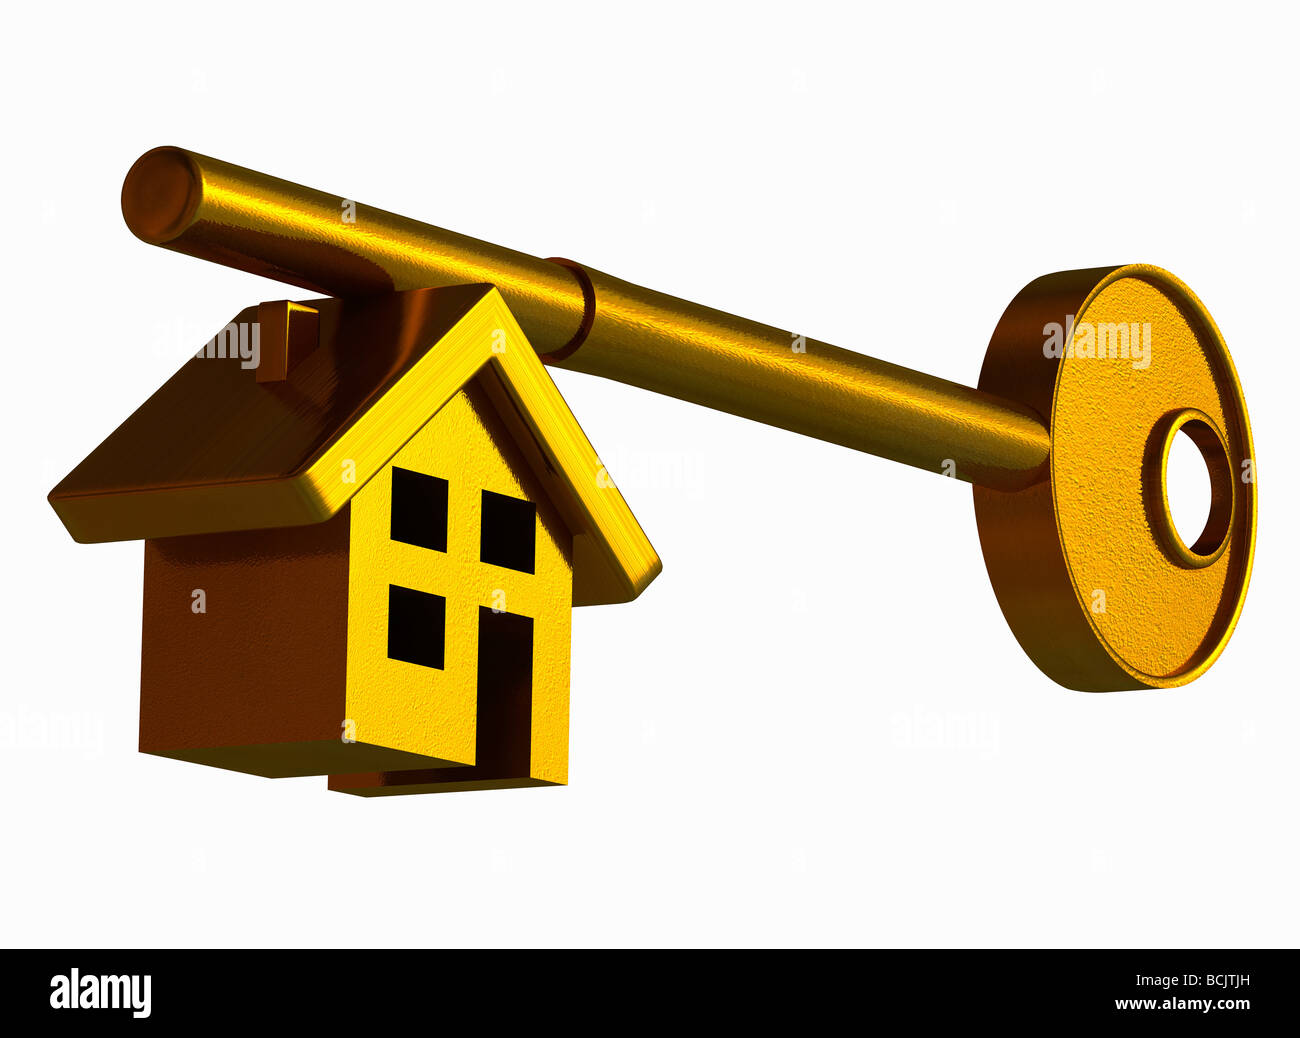 House shape on a key Stock Photo